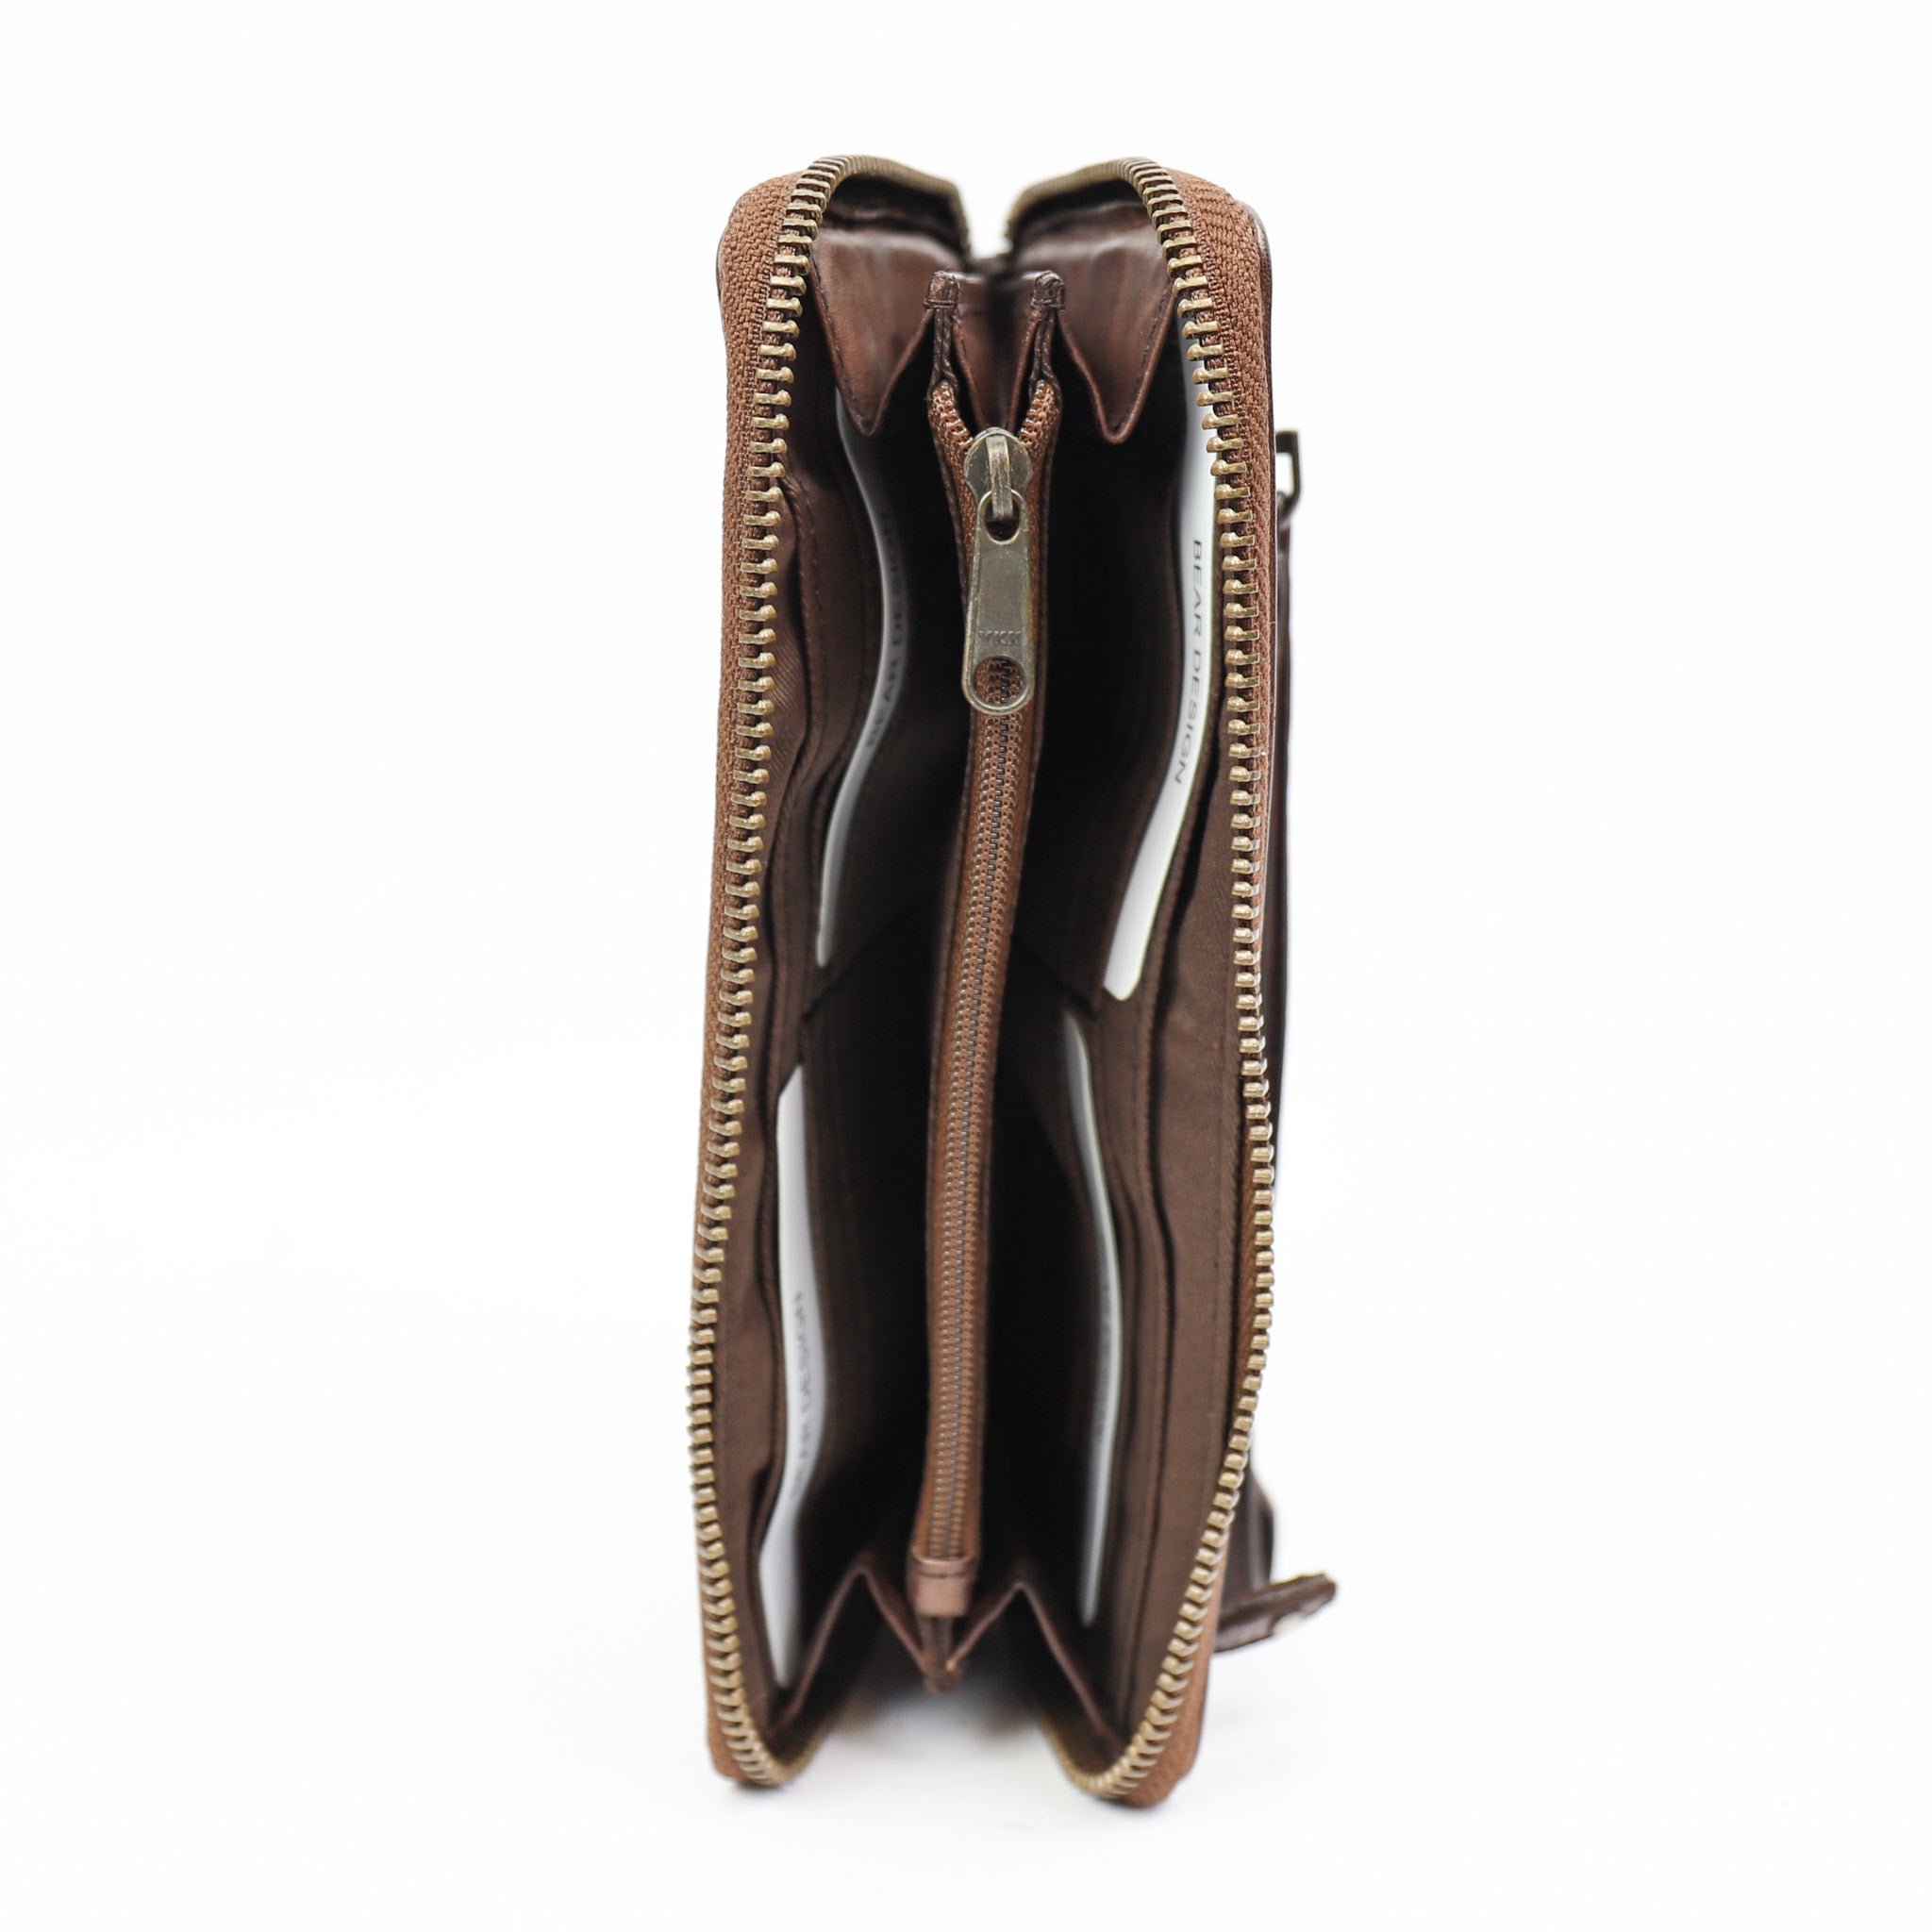 Zipper wallet 'Sofie' dark brown - CL 15882